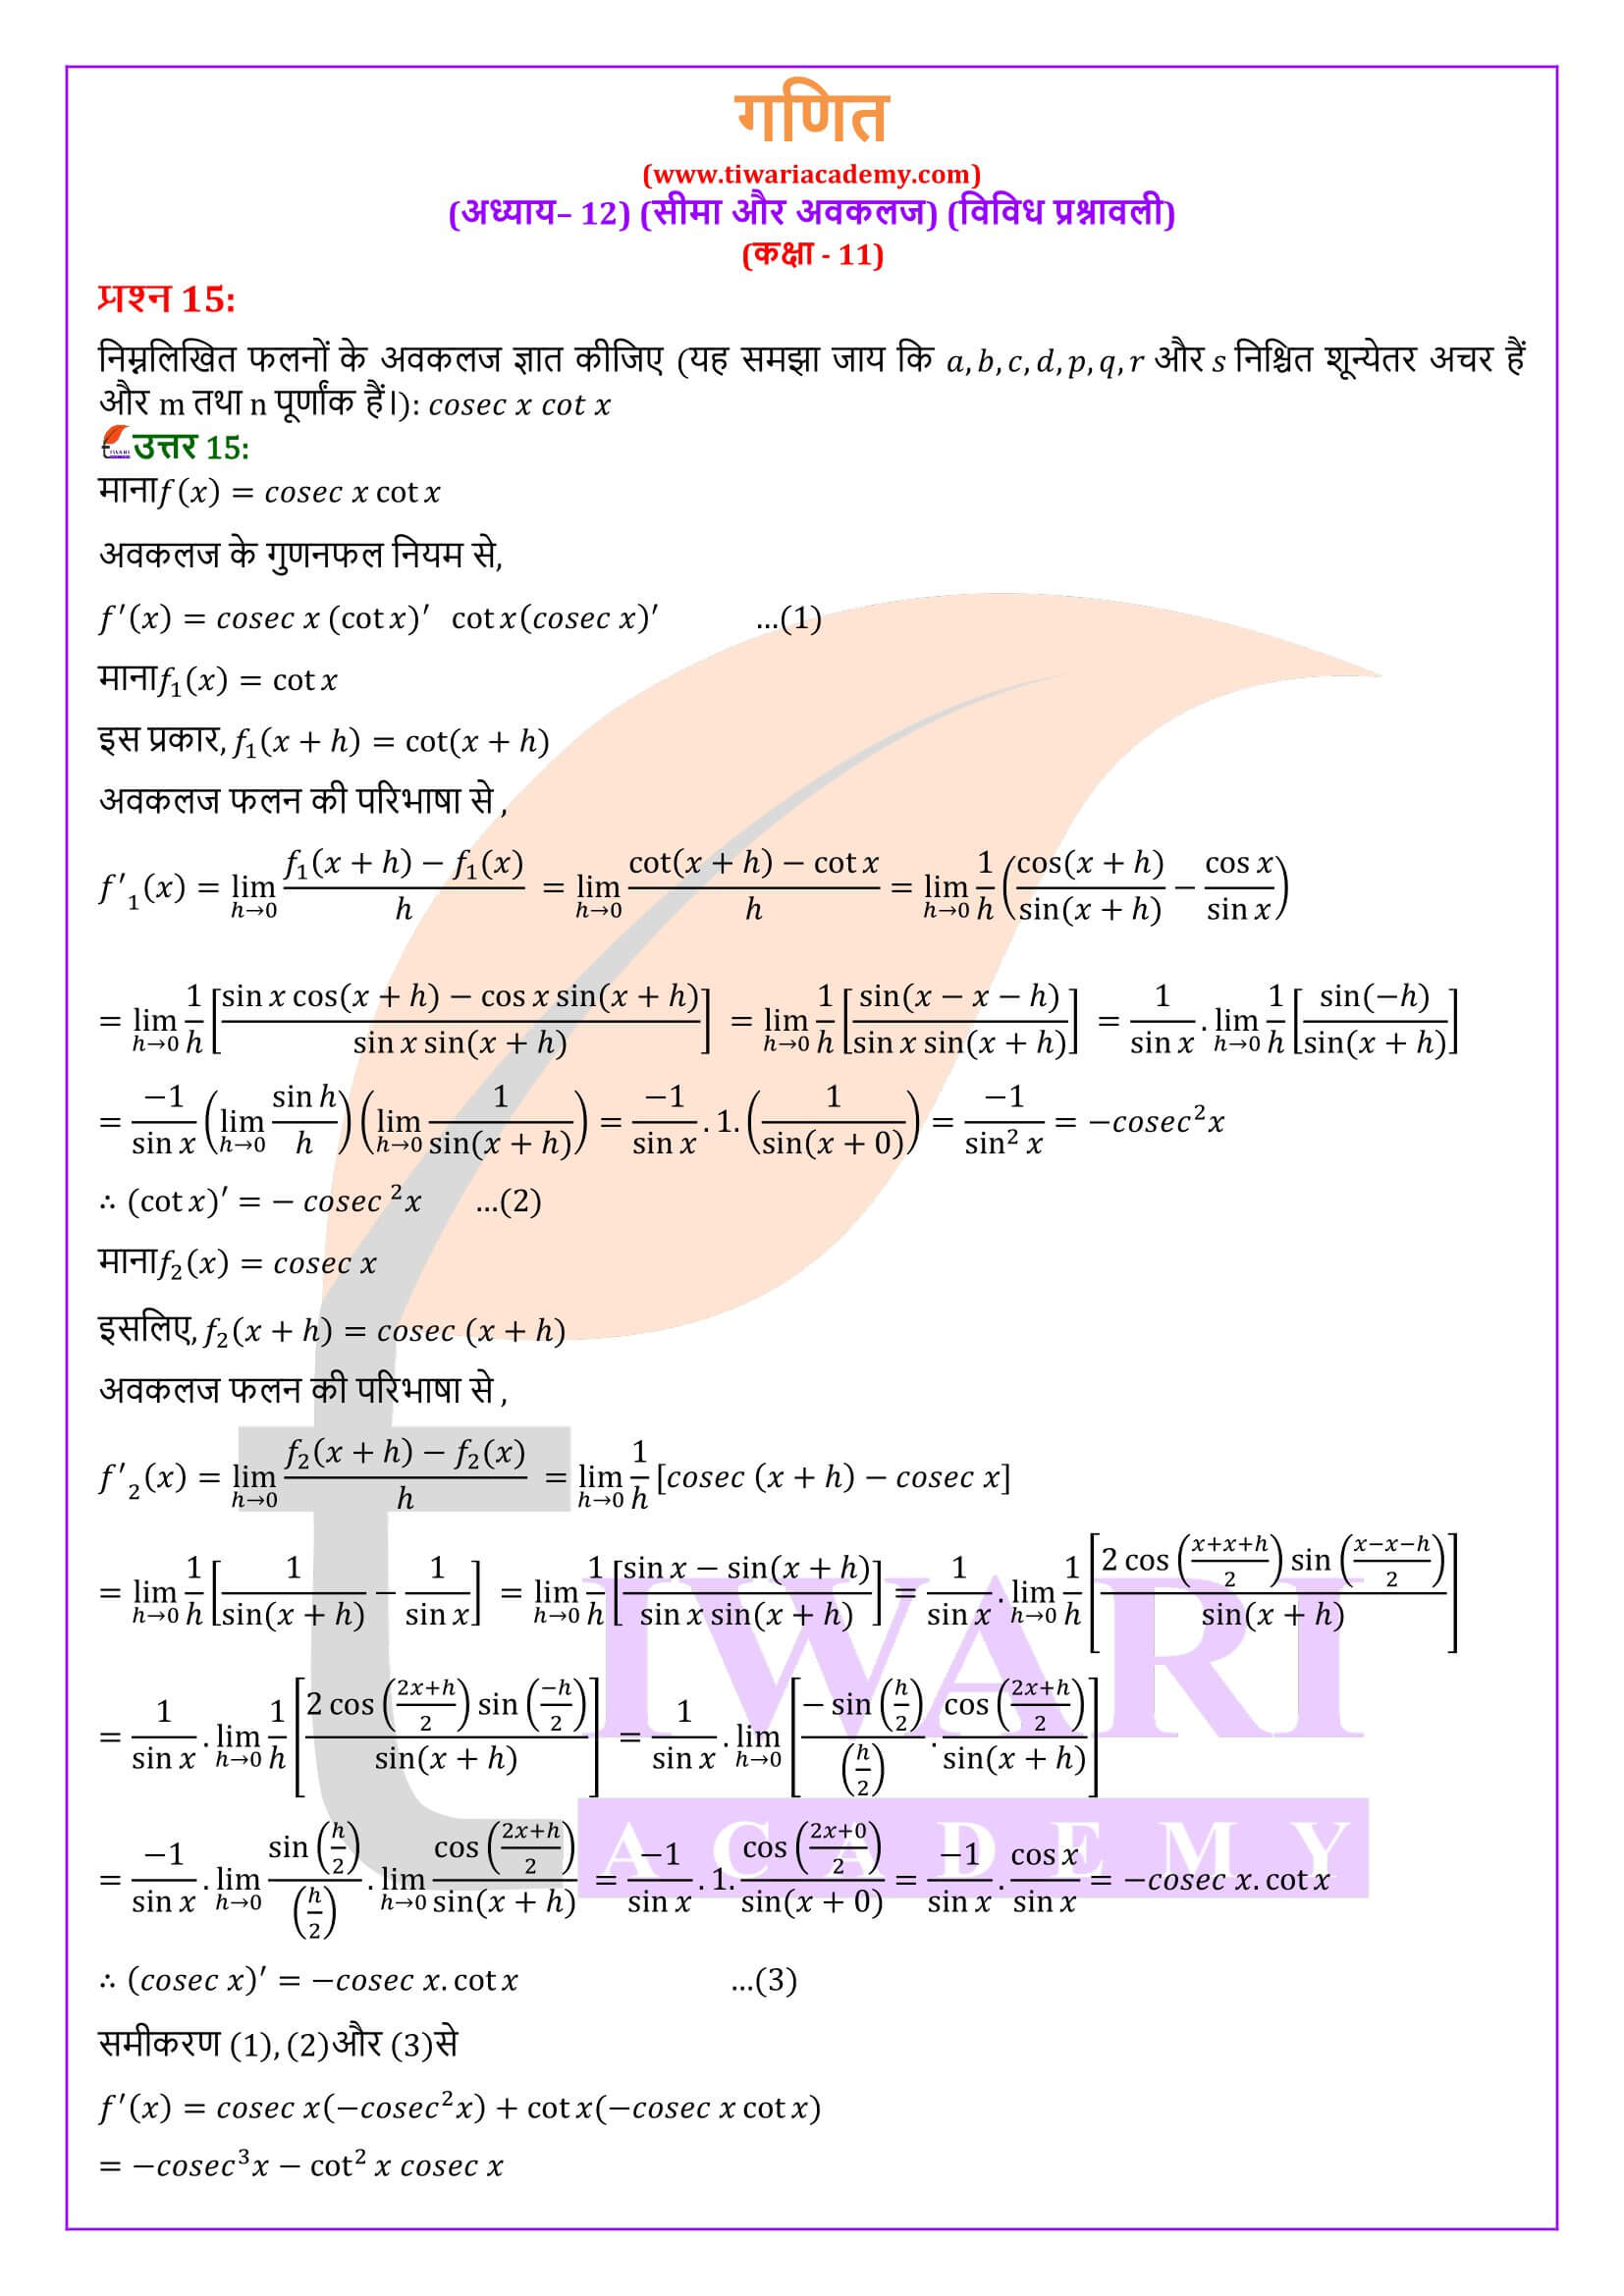 एनसीईआरटी समाधान कक्षा 11 गणित अध्याय 12 विविध अभ्यास के हल हिंदी में